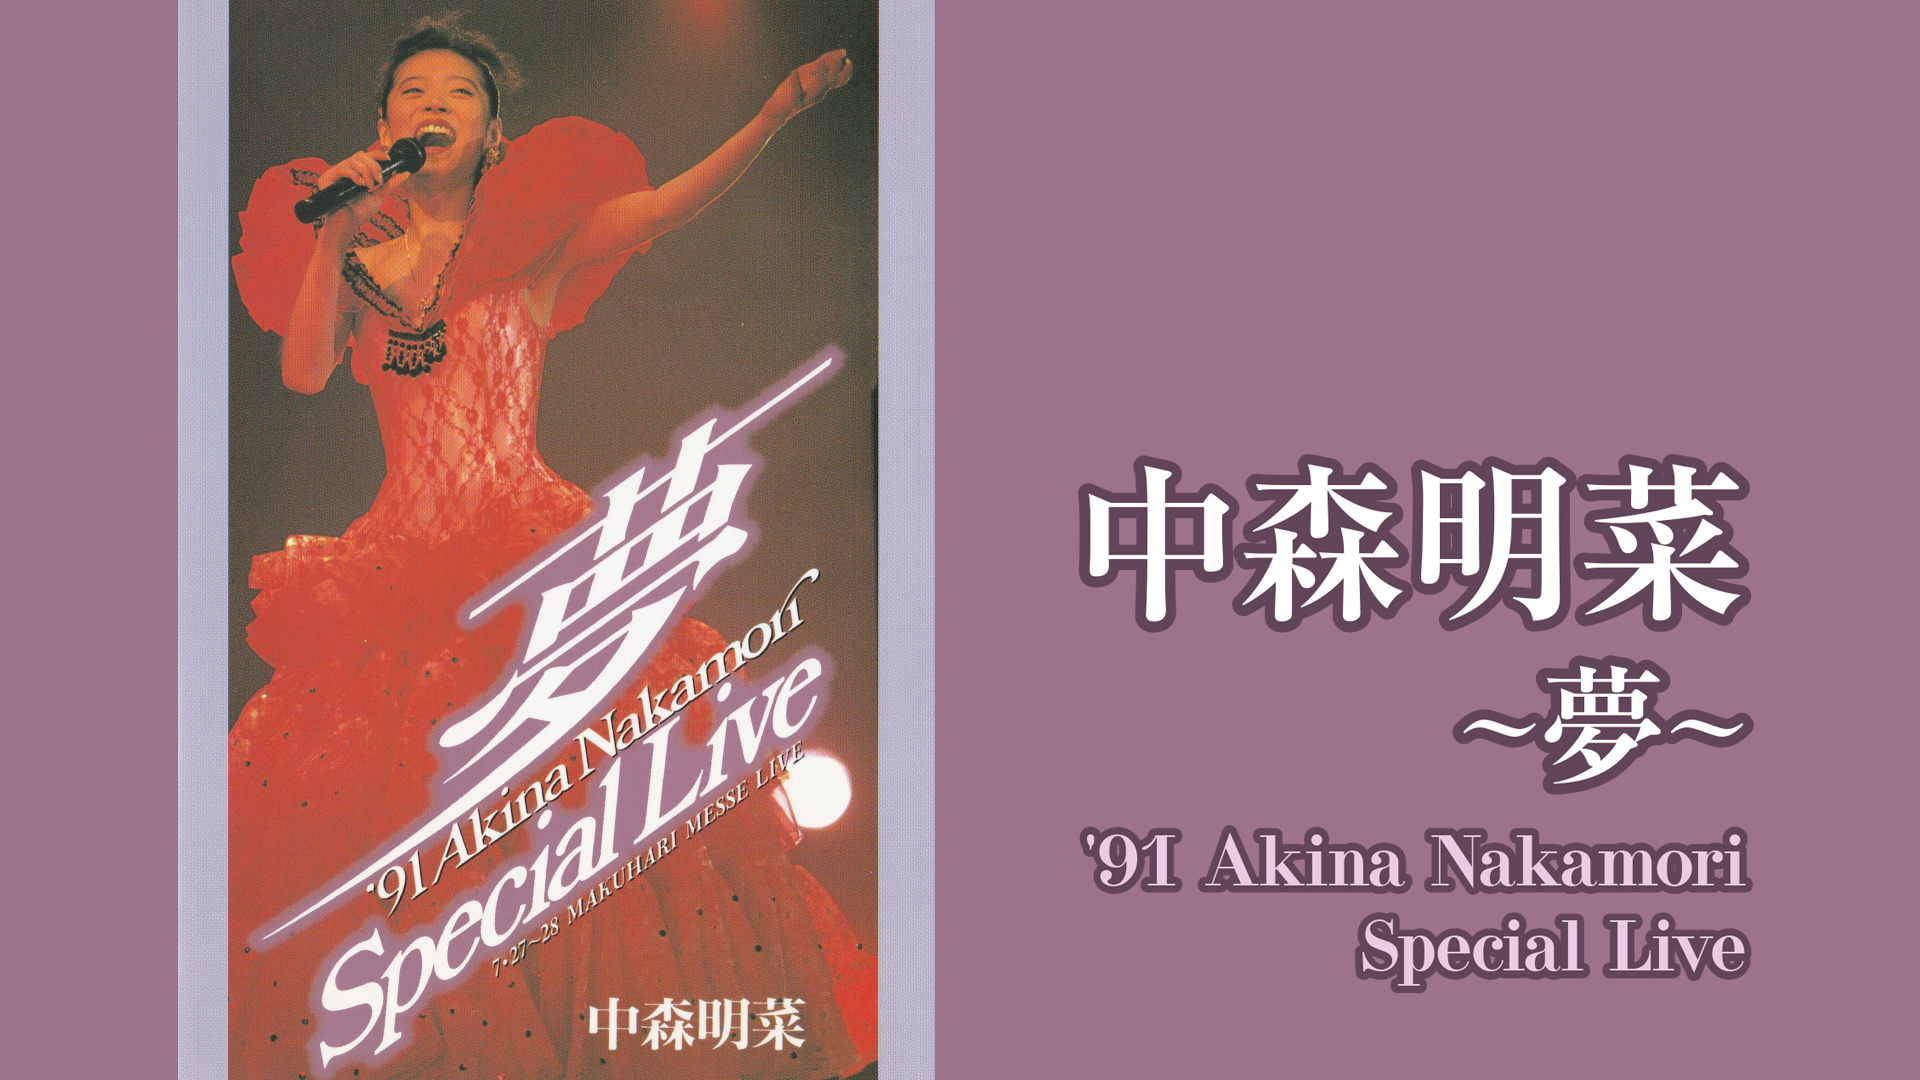 夢～ '91 Akina Nakamori Special Live(音楽・ライブ / 1992) - 動画 